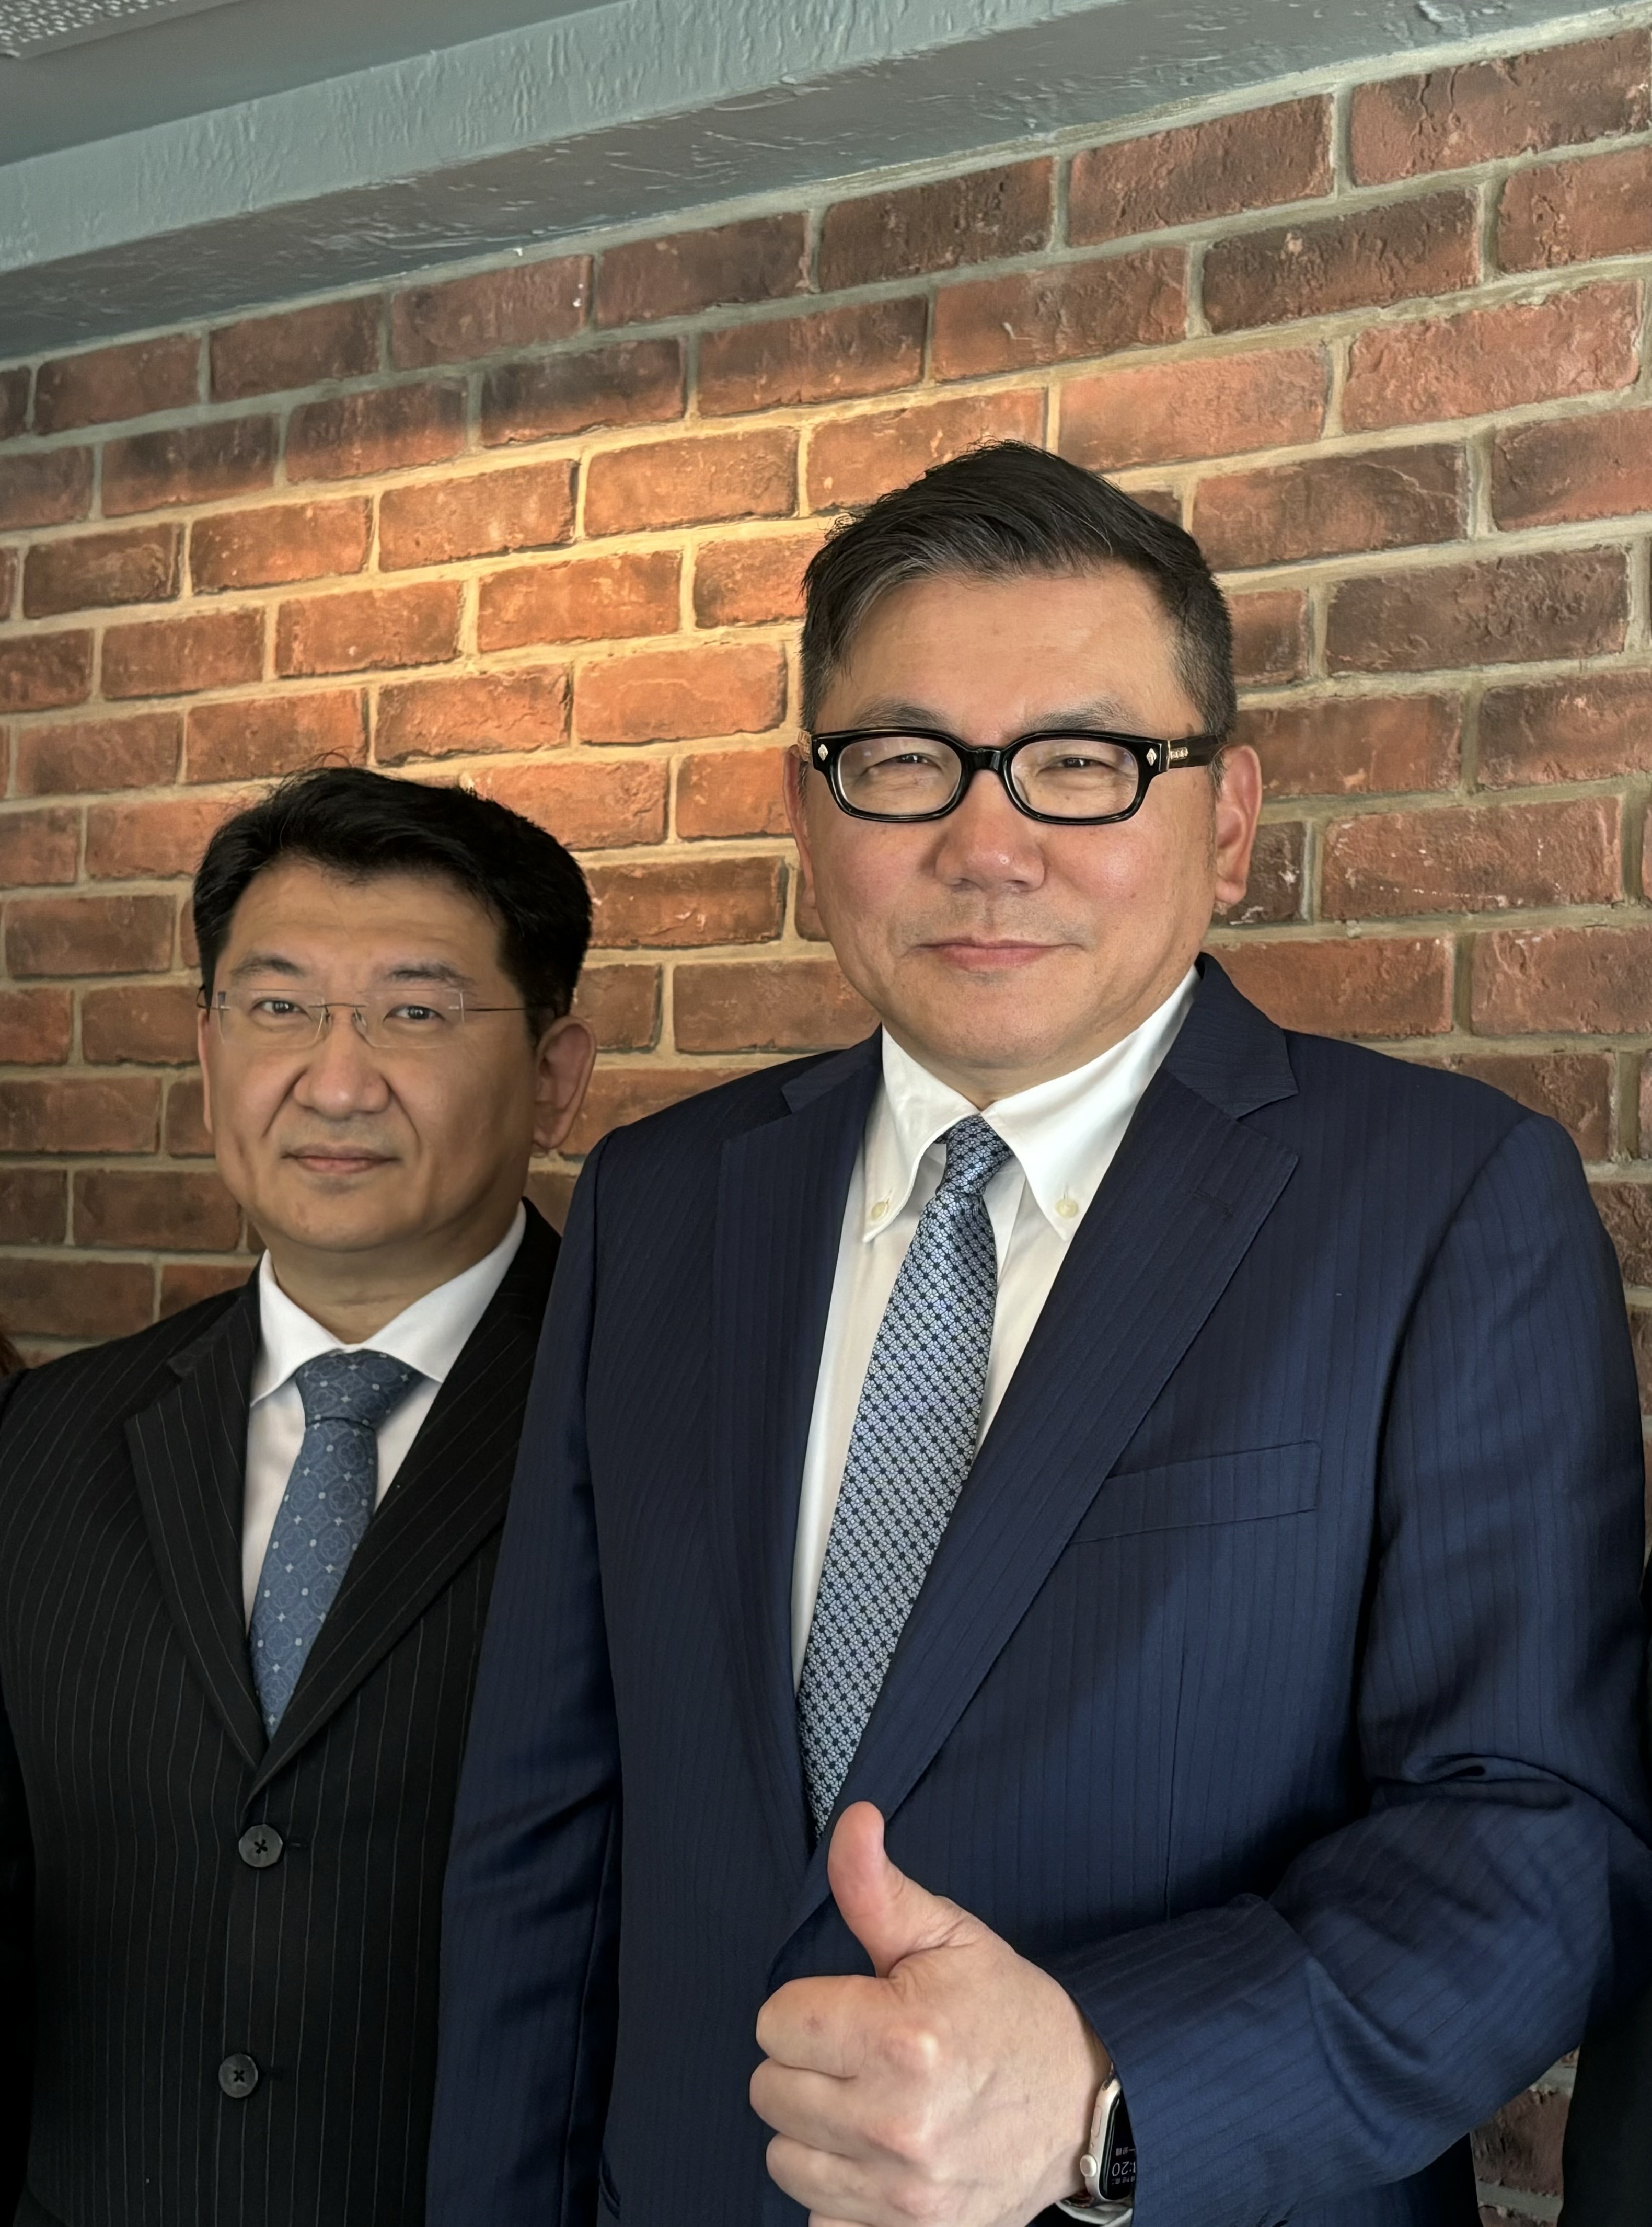 雅茗-KY董事长吴伯超(右)与总经理江锡毅。图/严雅芳摄影